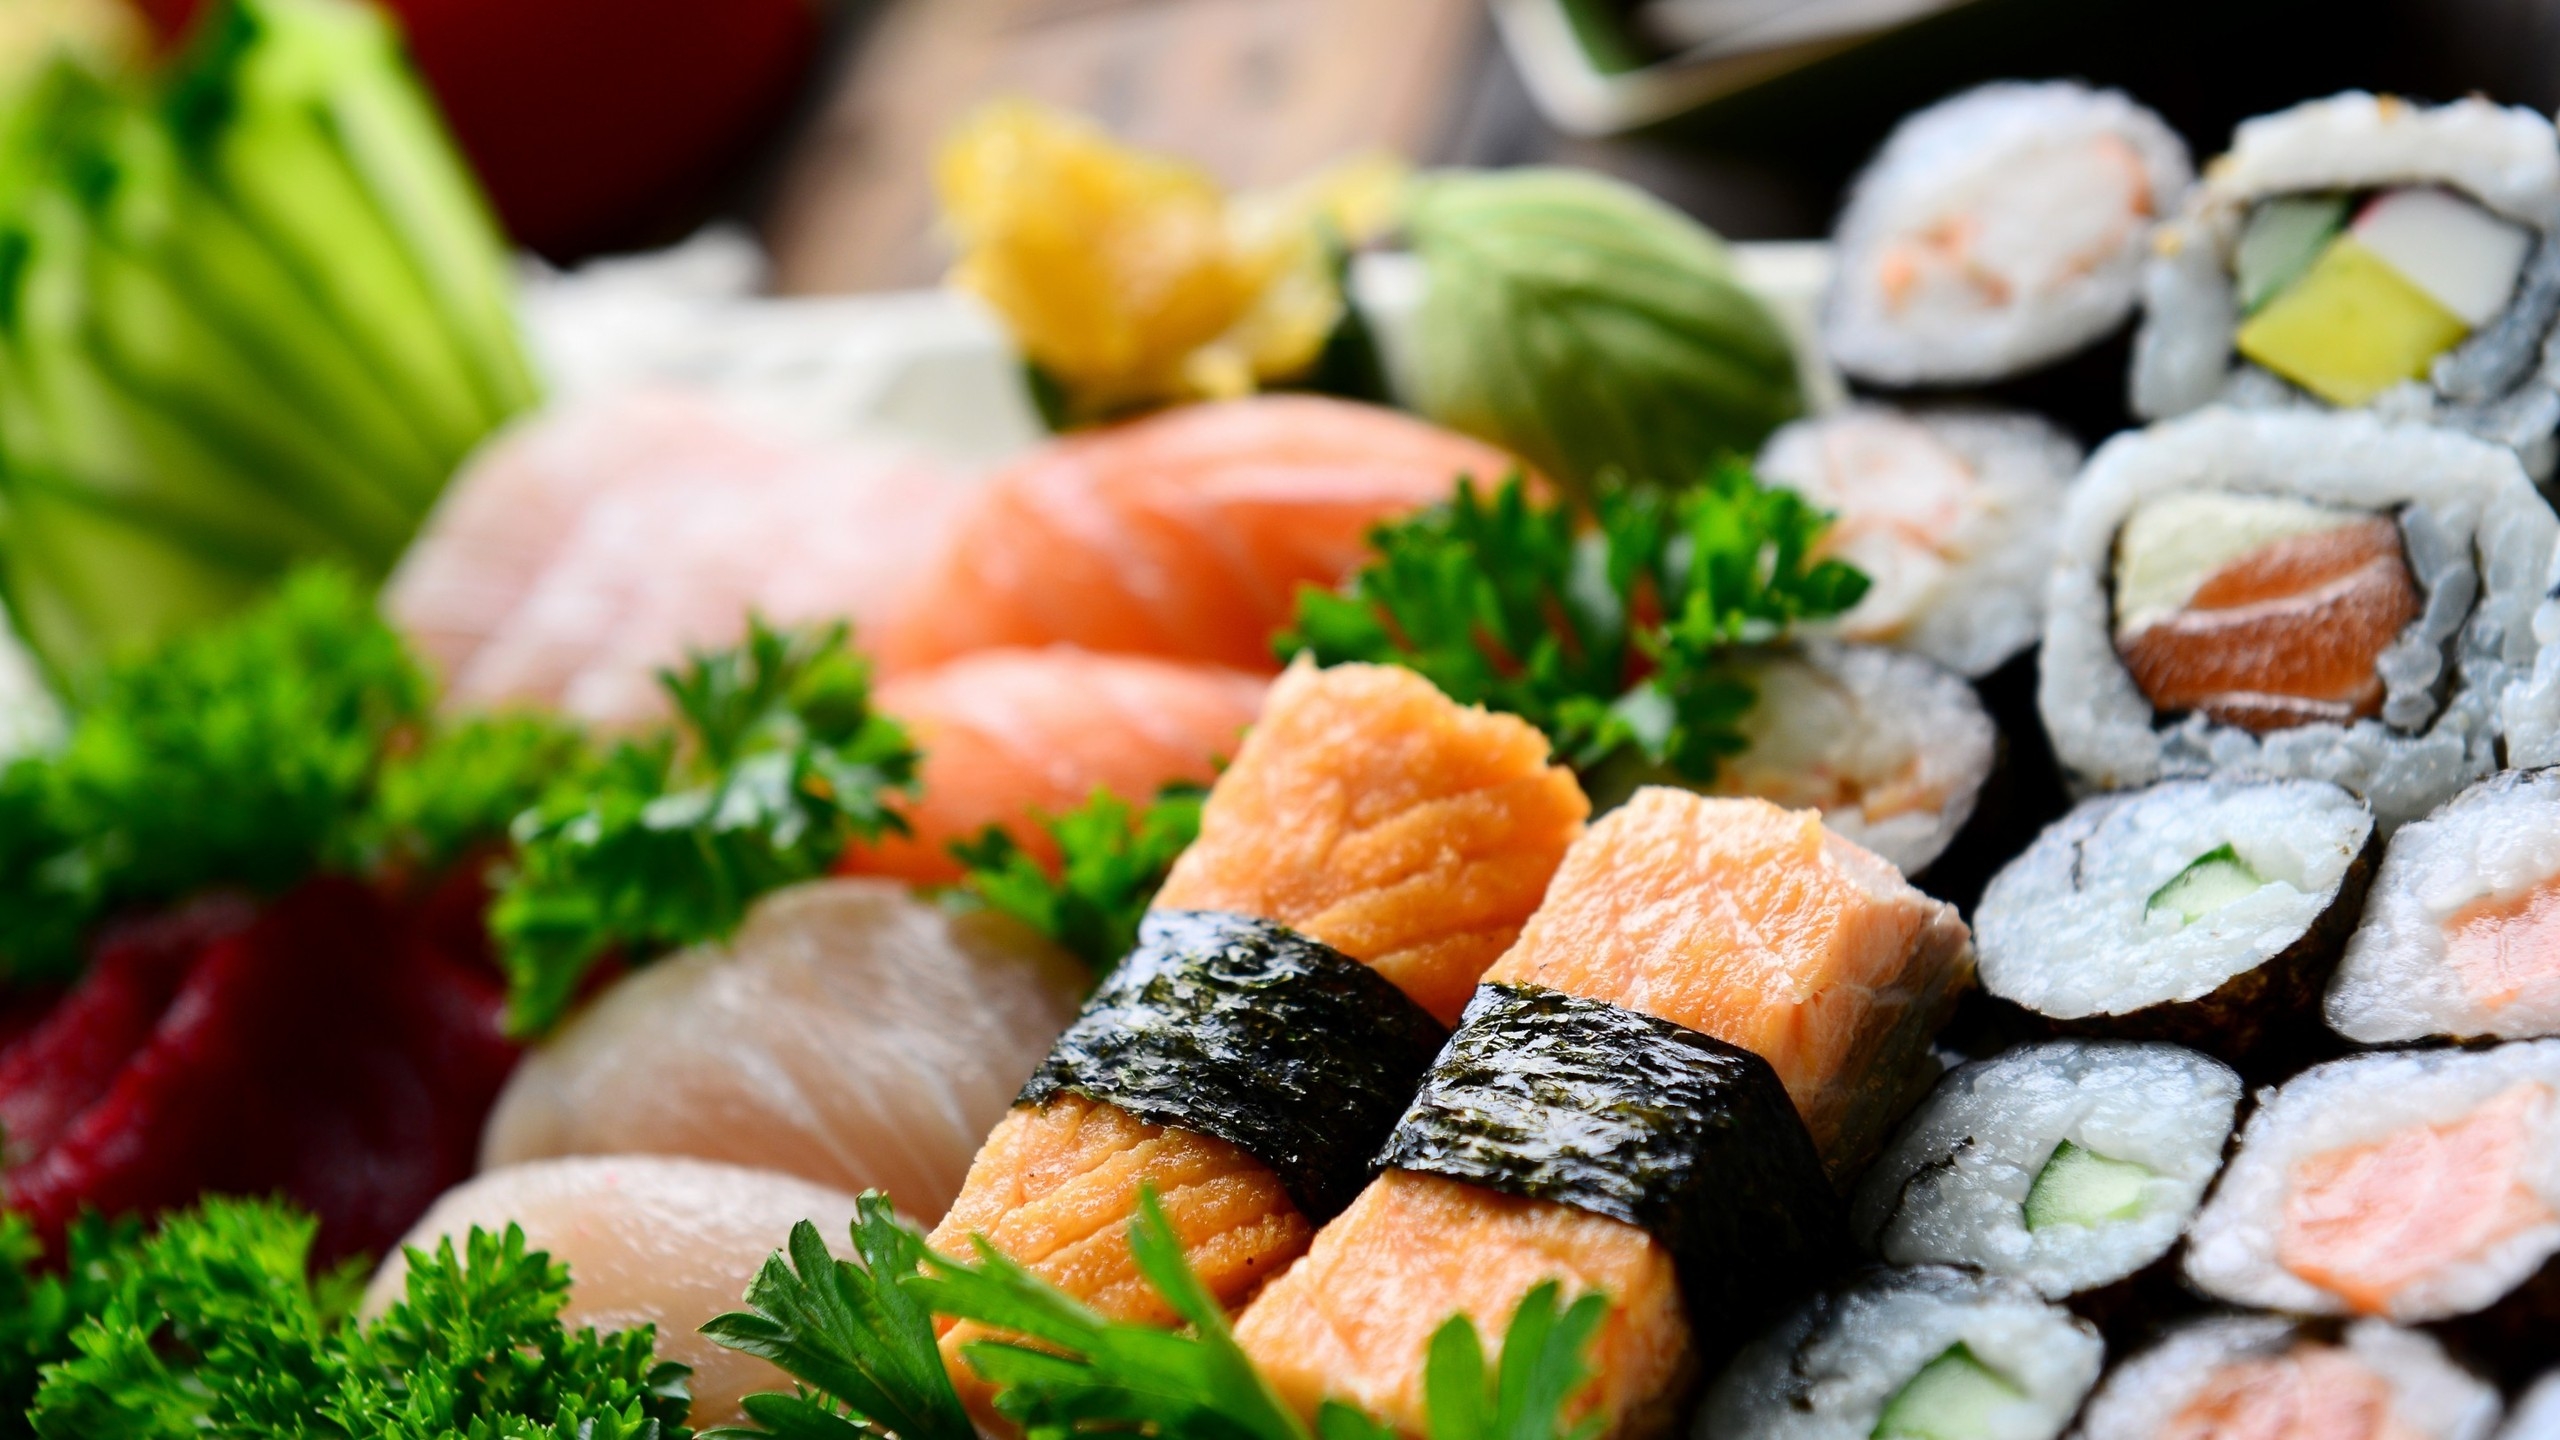 Appetizing Sushi Rolls for 2560x1440 HDTV resolution